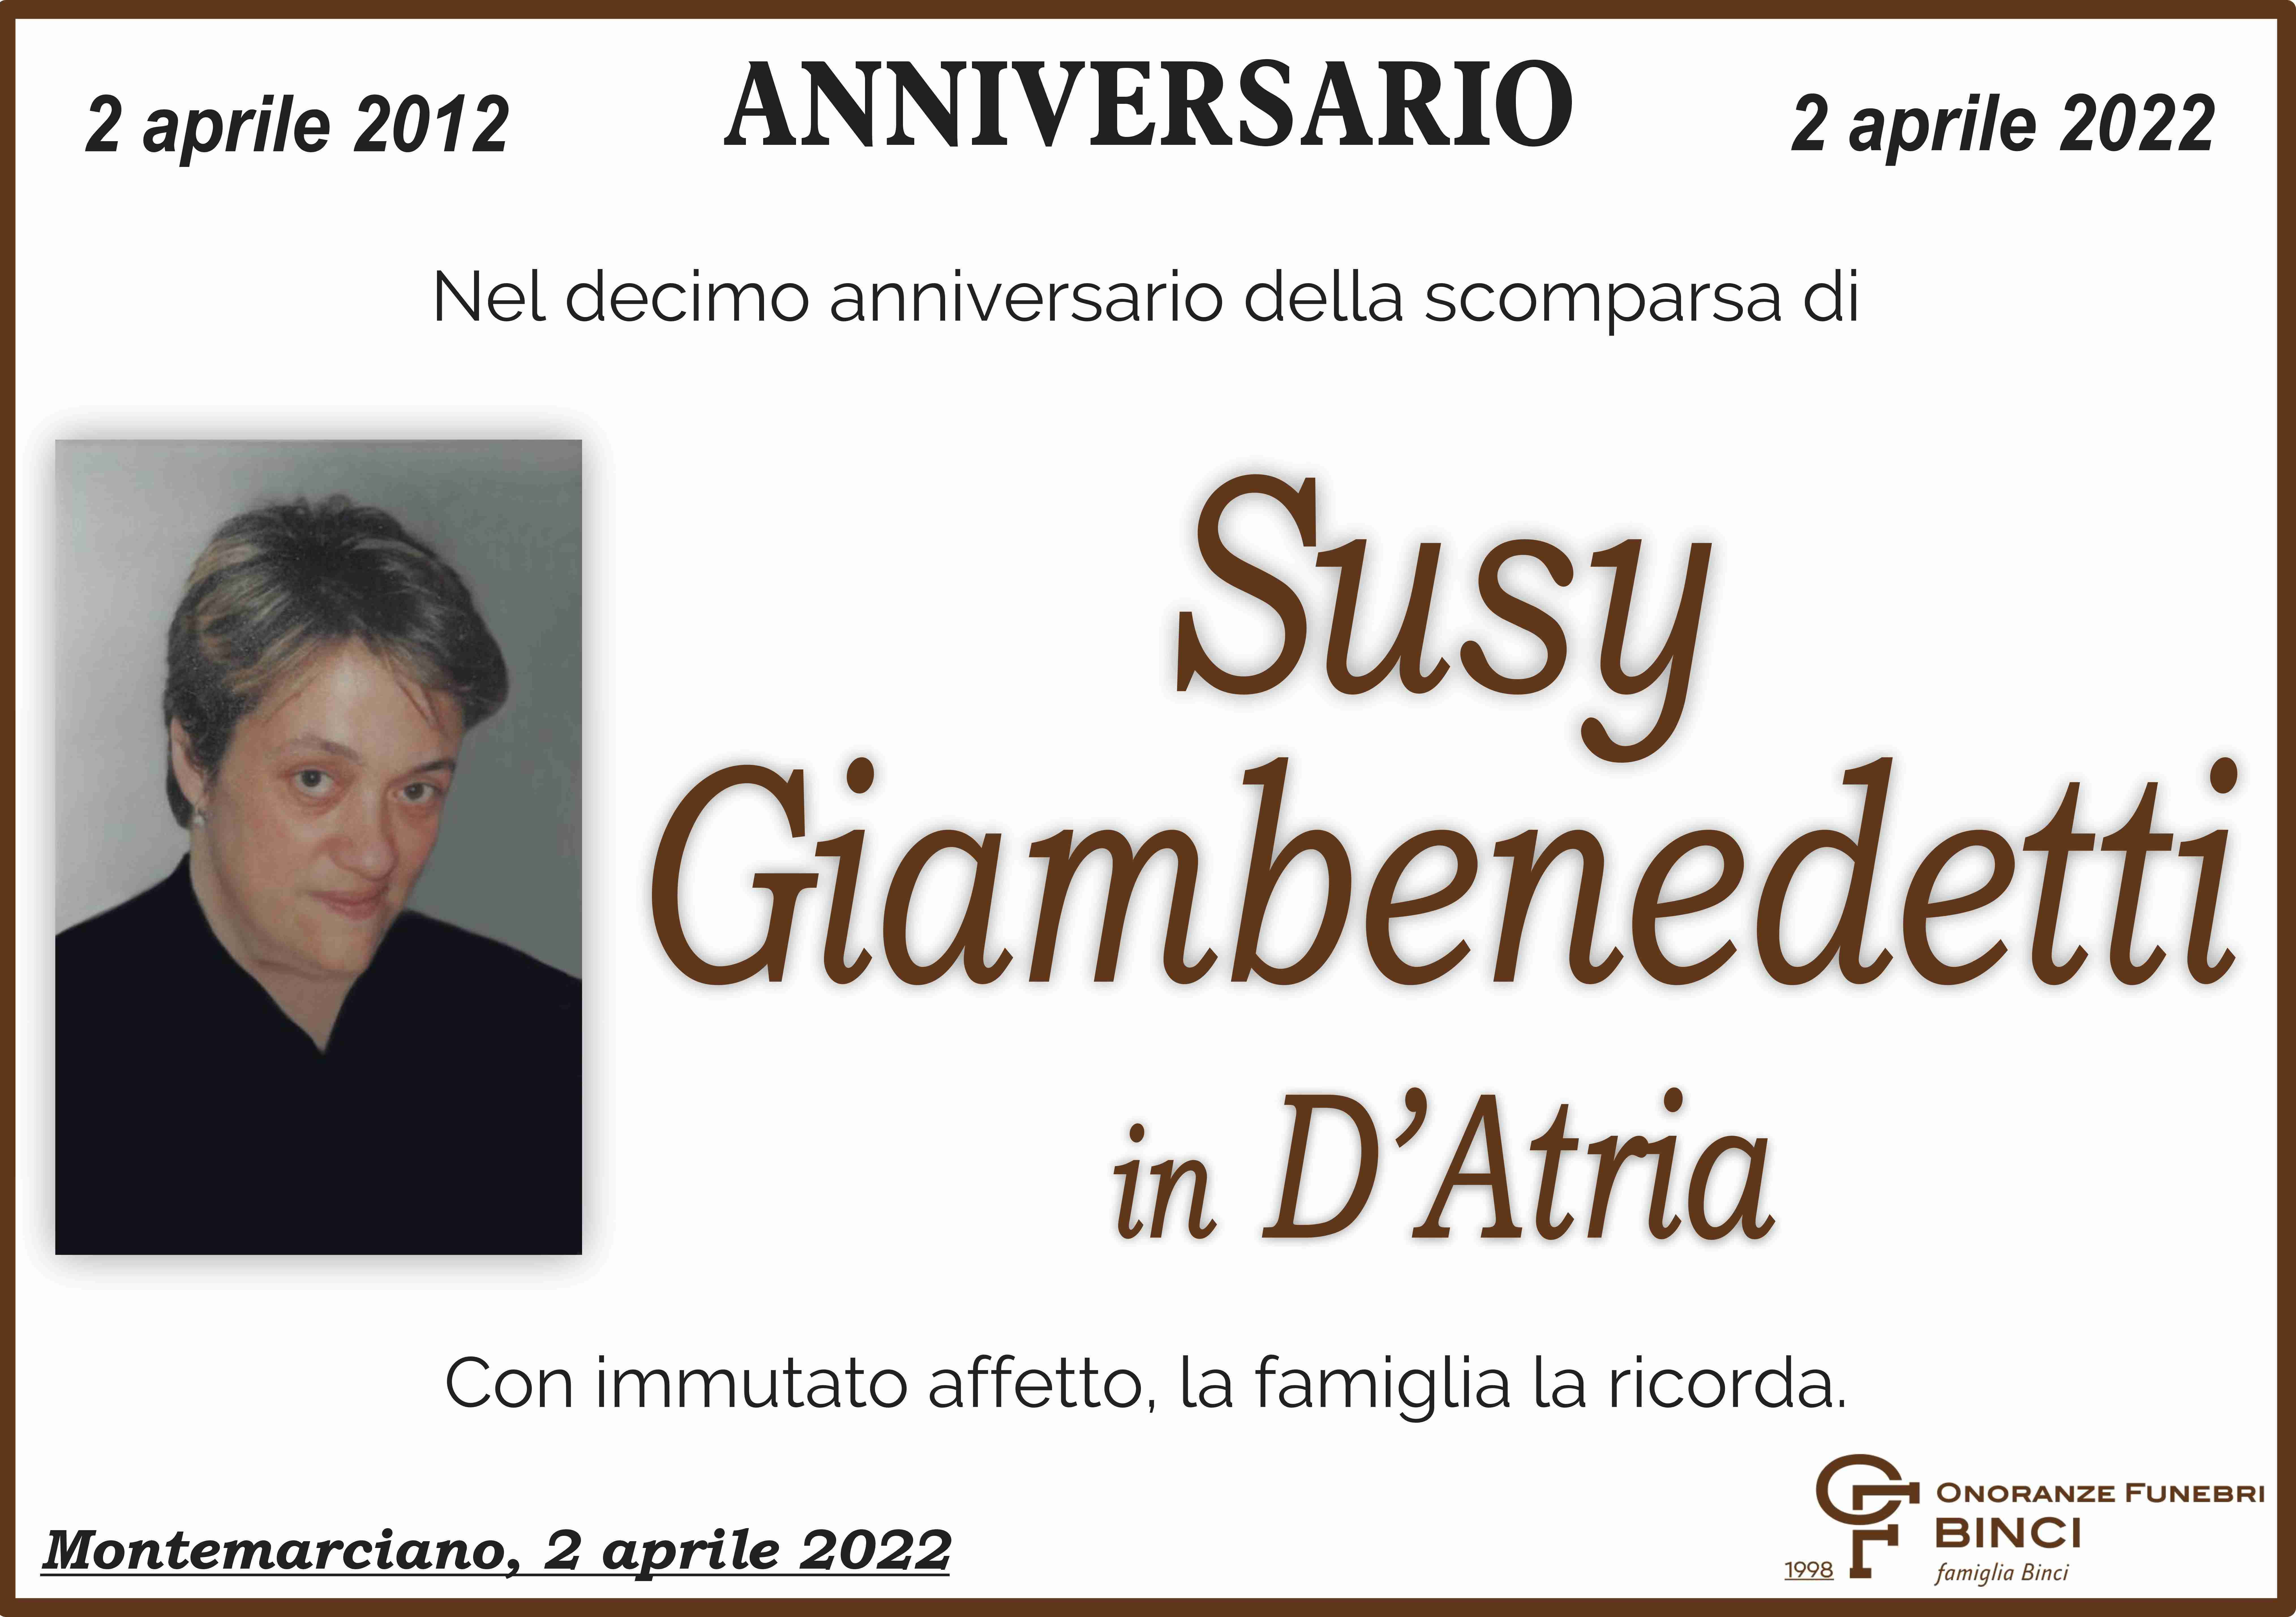 Susy Giambenedetti